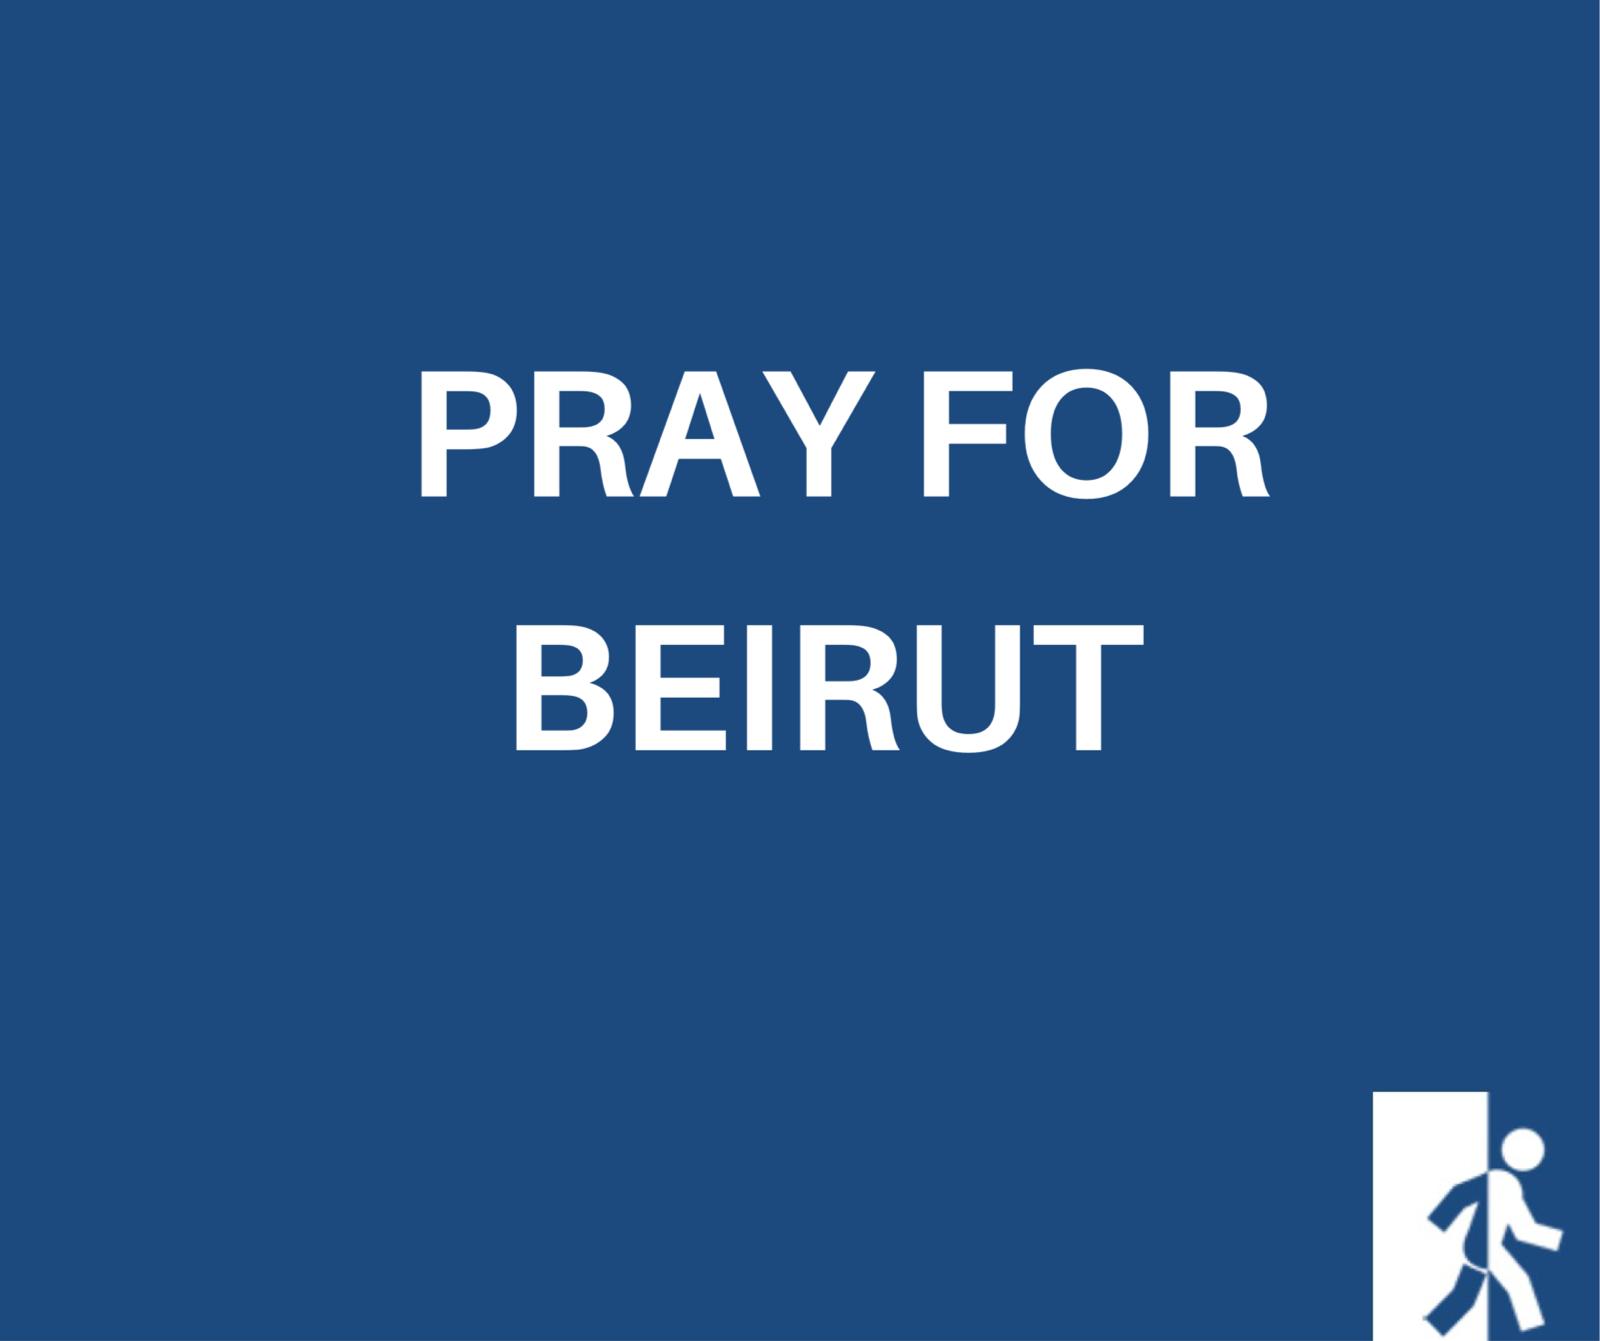 Pray for Beirut